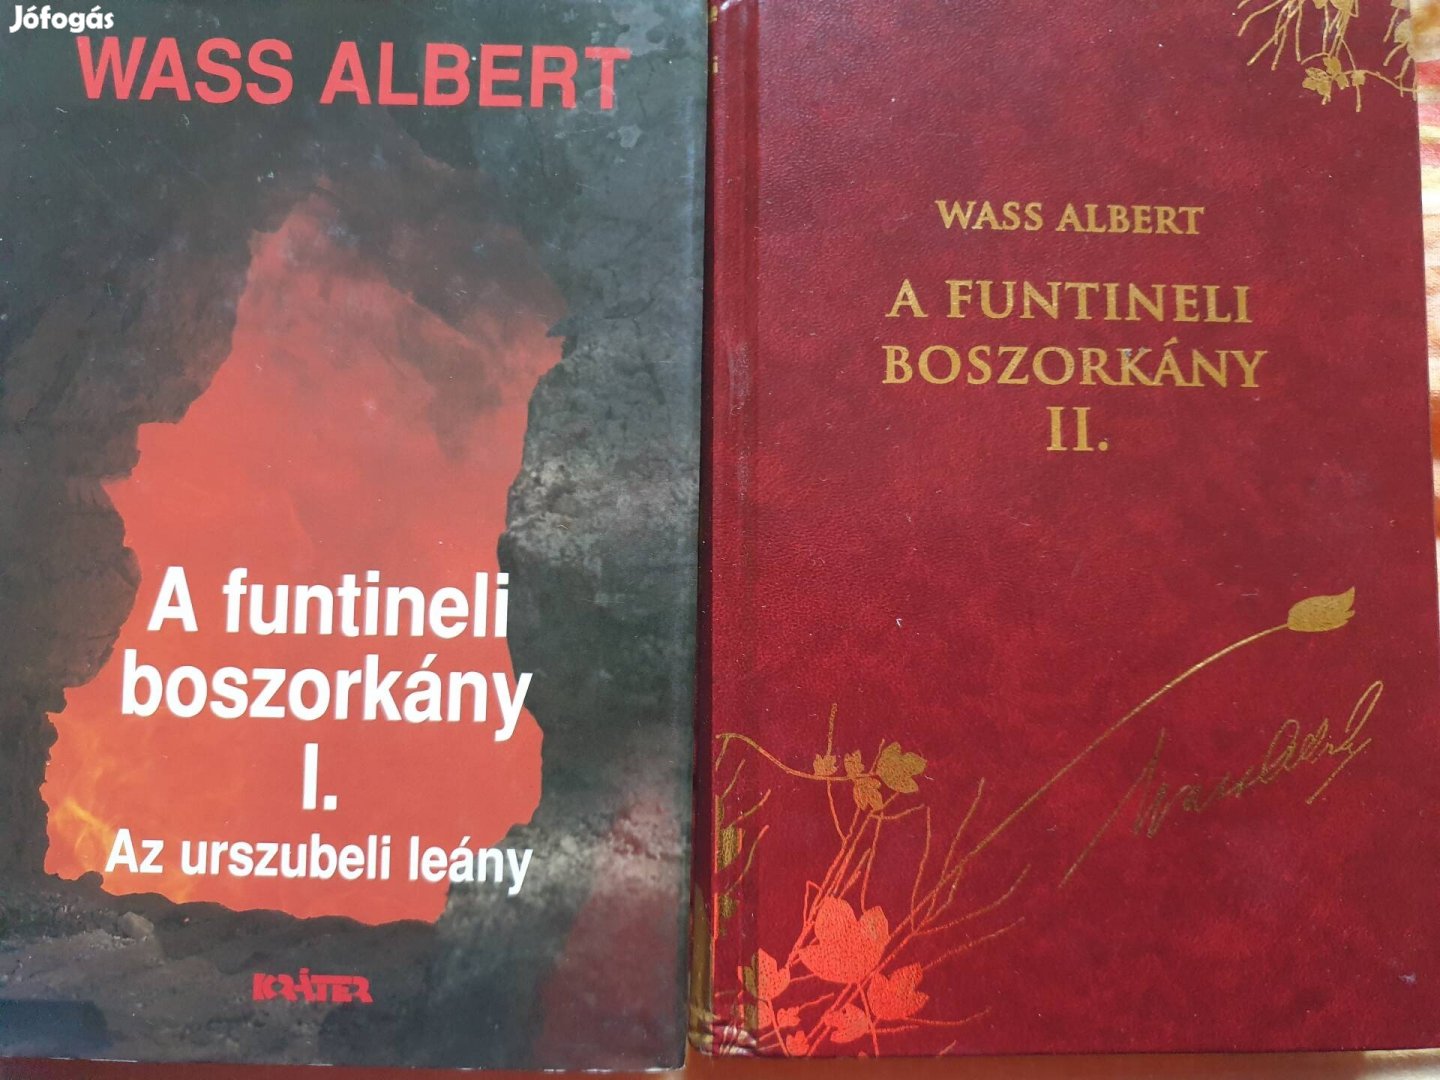 Wass Albert könyvcsomag eladó Xl.ker 